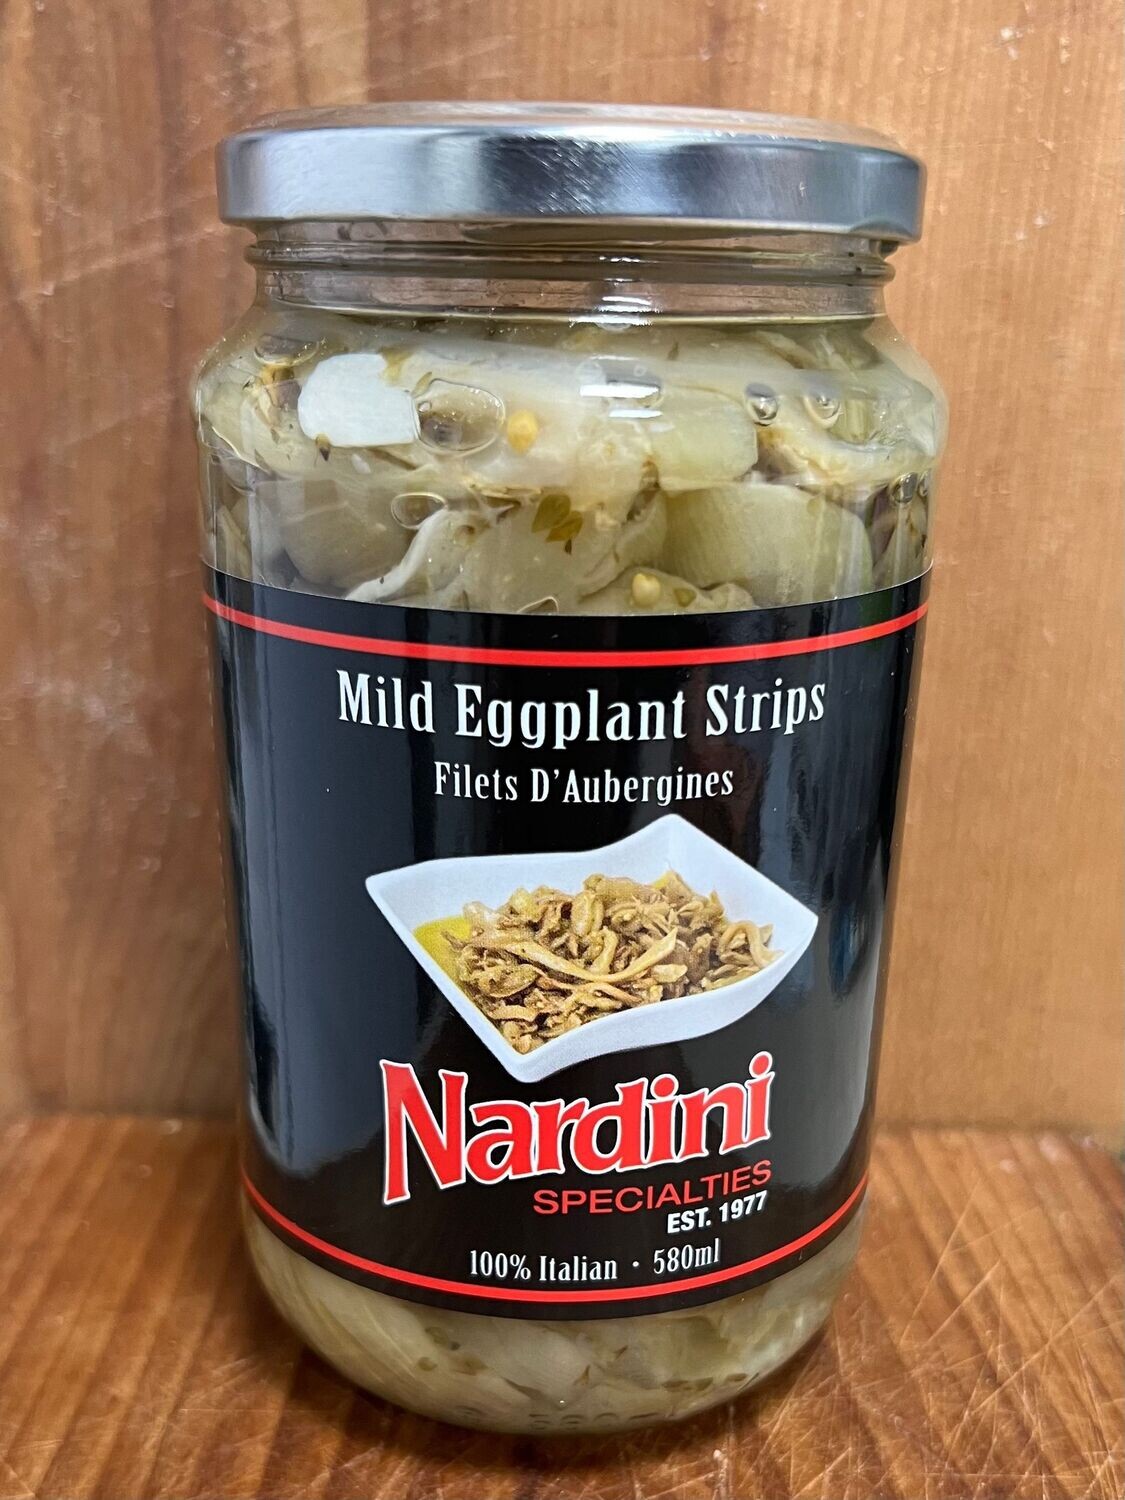 Mild Eggplant Strips - Nardini Private Label